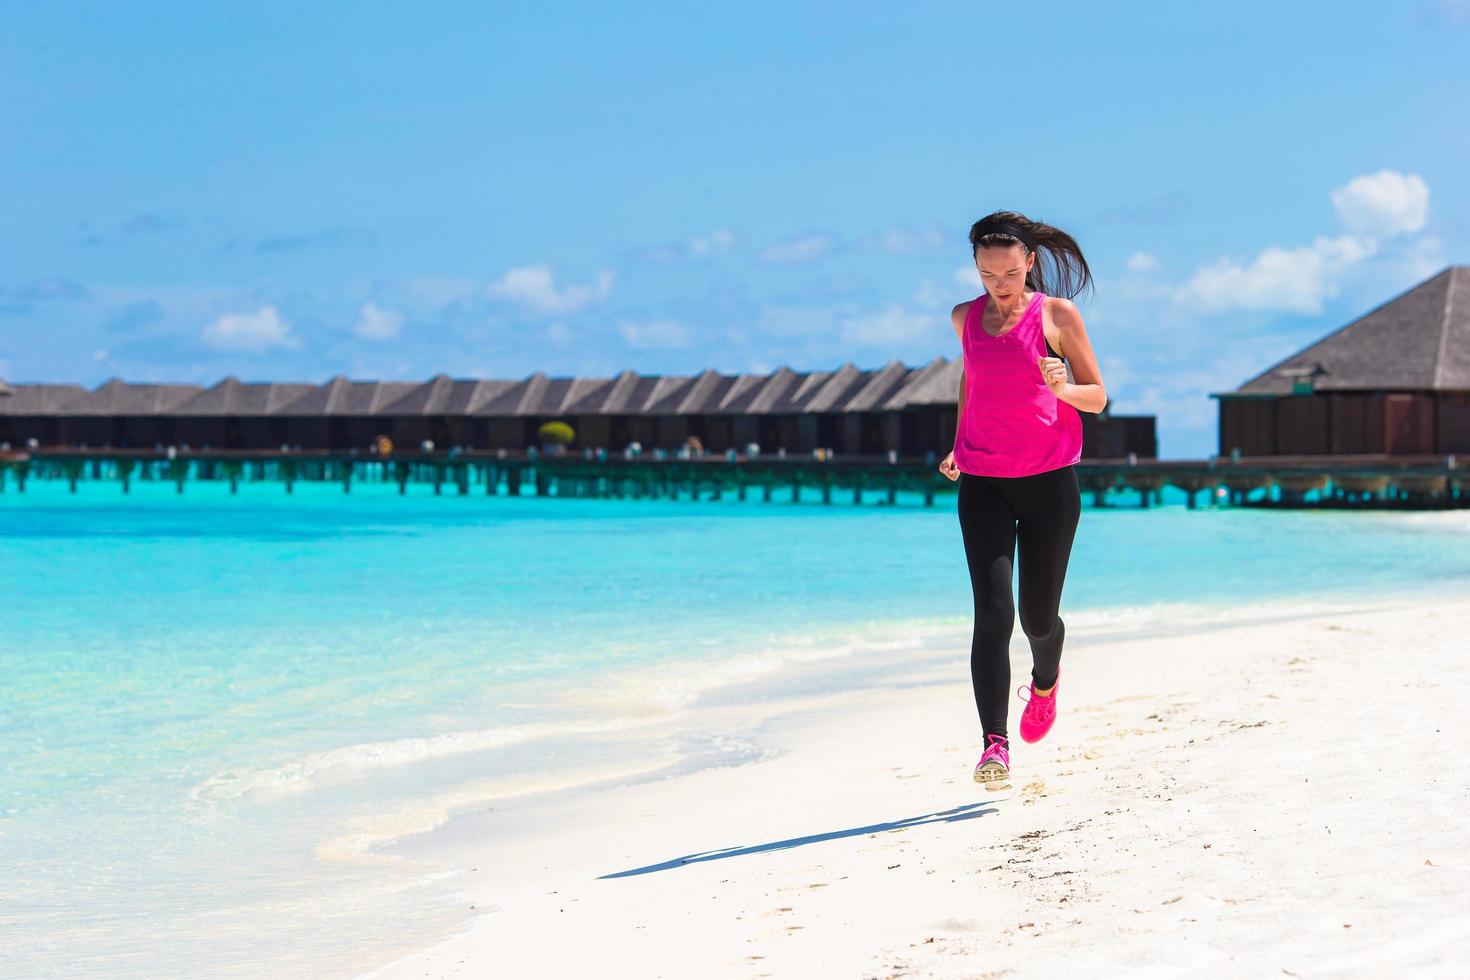 Maldivas, Asia del Sur, 2020 - Mujer corriendo en un resort de playa foto